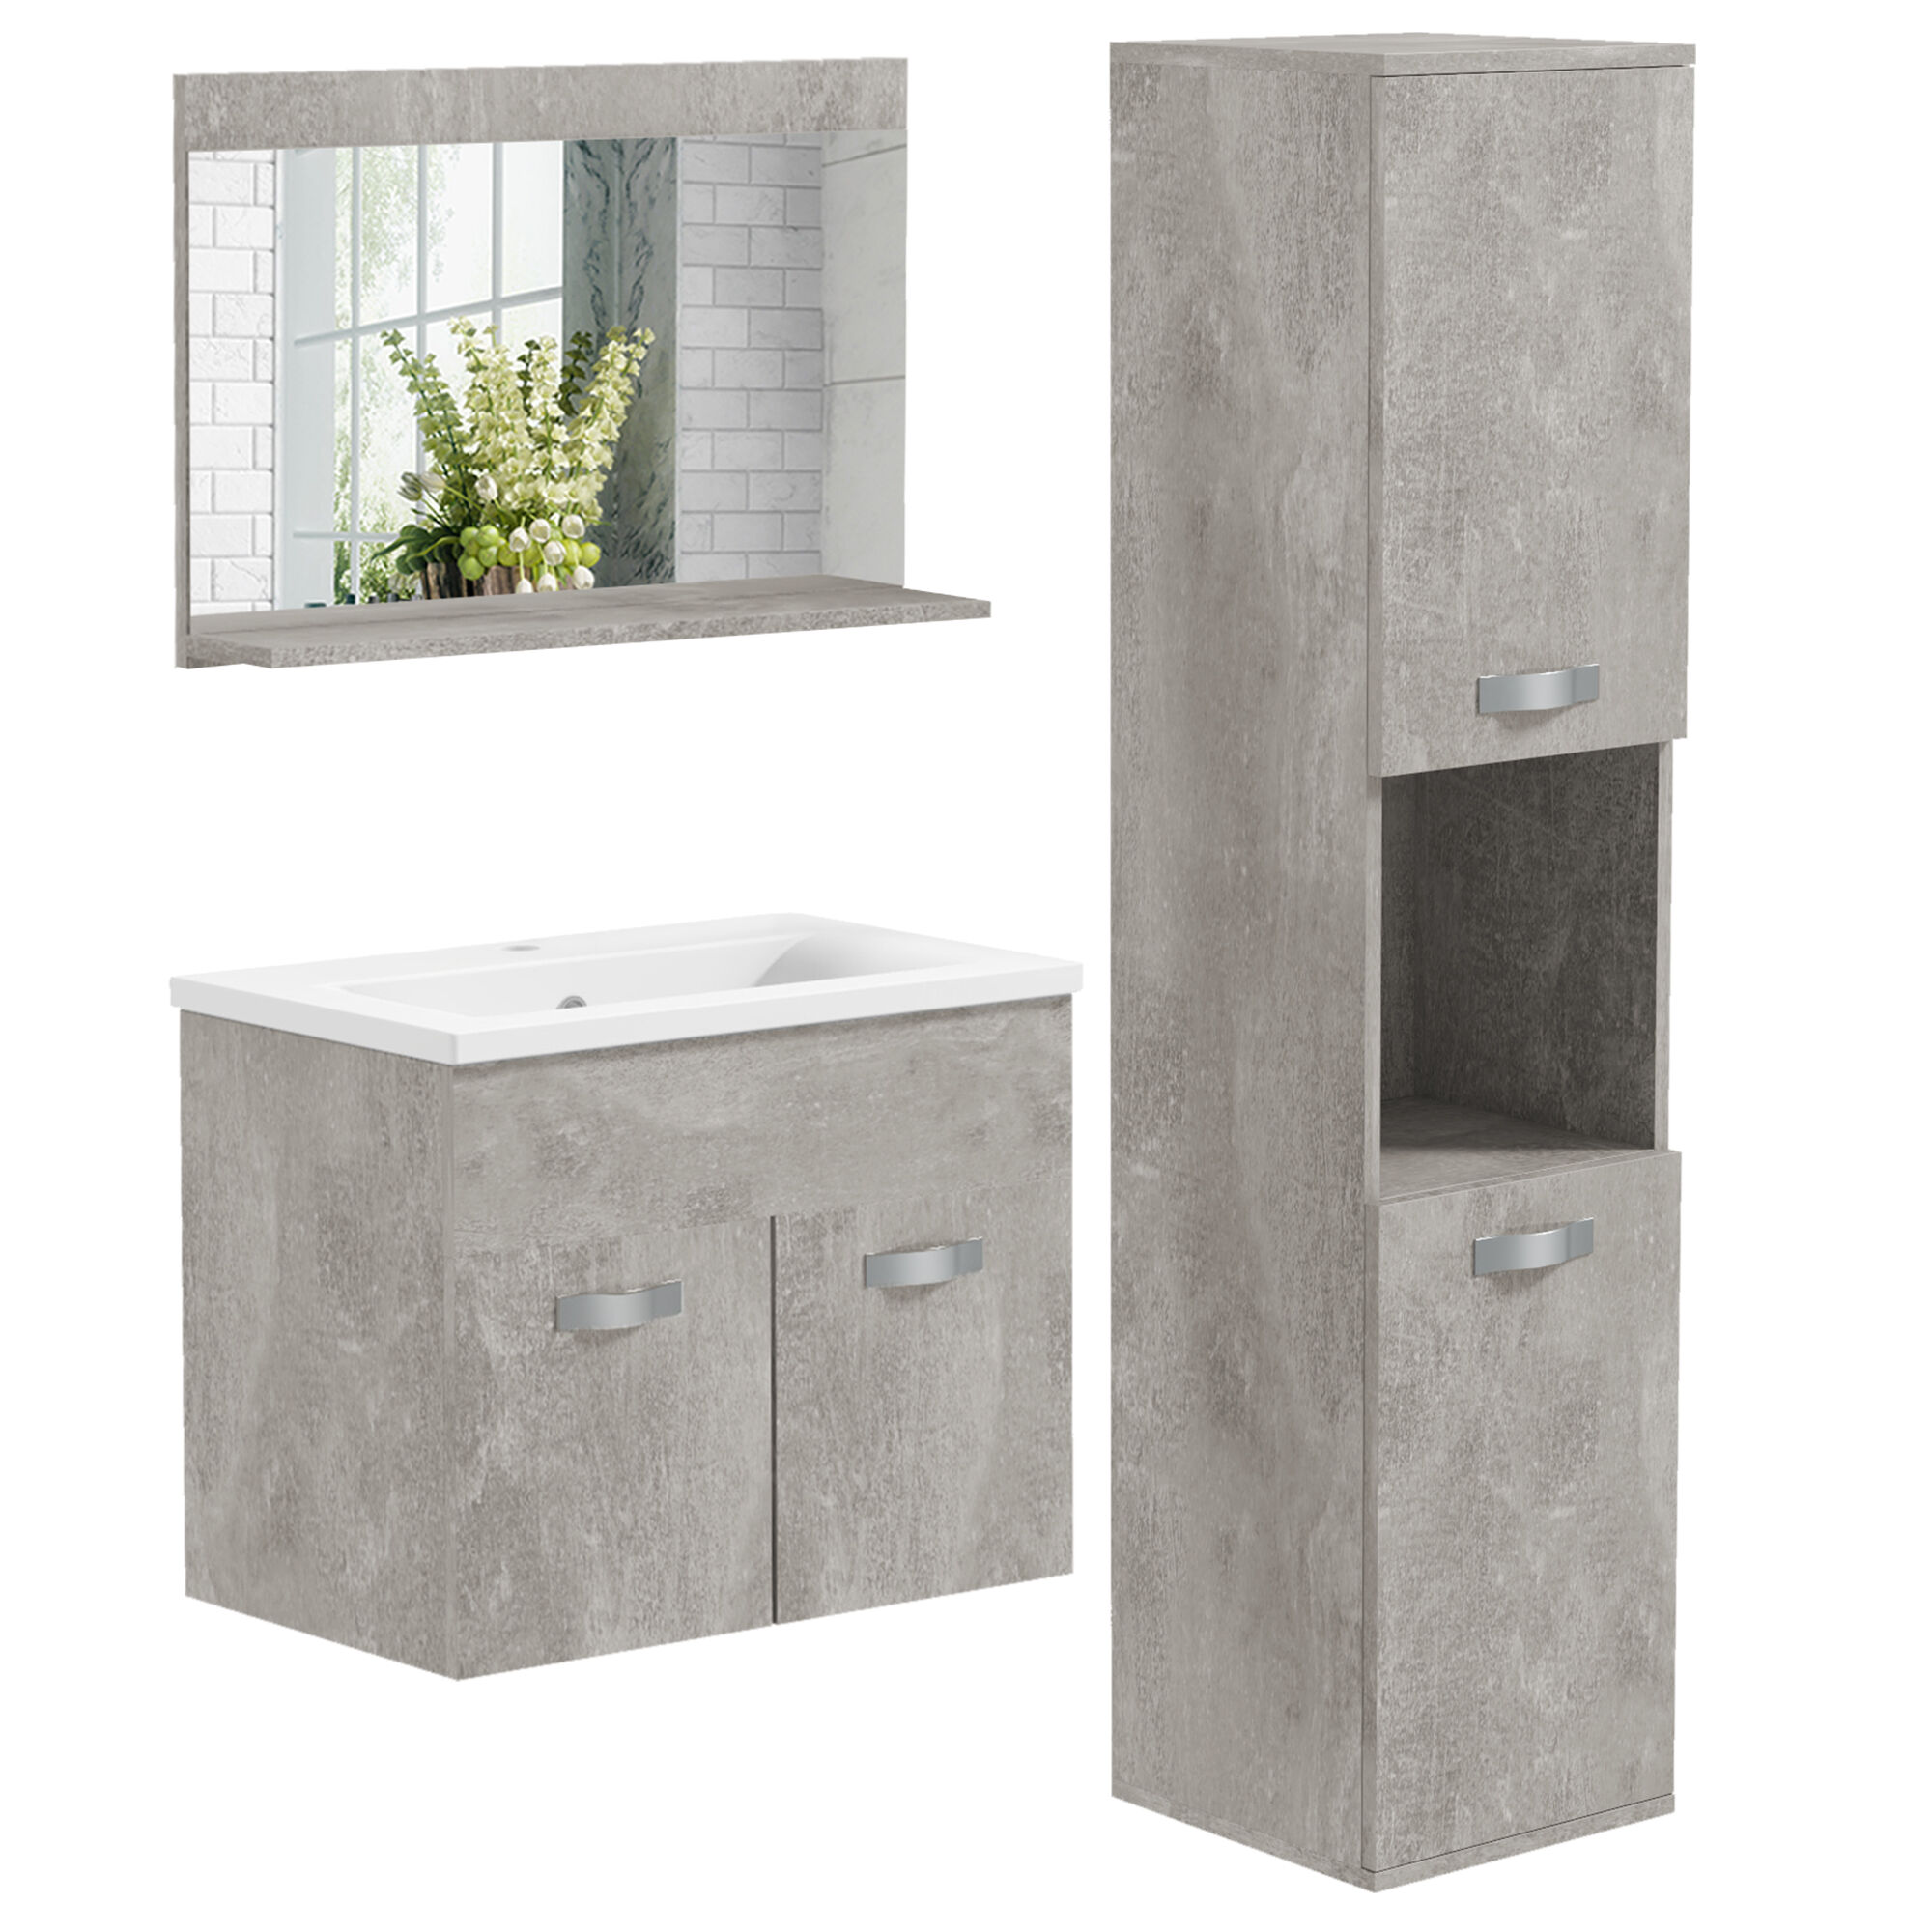 kleankin Conjunto de Muebles de Baño de Pared 3 Piezas Incluye Espejo Armario con Lavabo Cerámico y Columna Auxiliar de Baño Gris